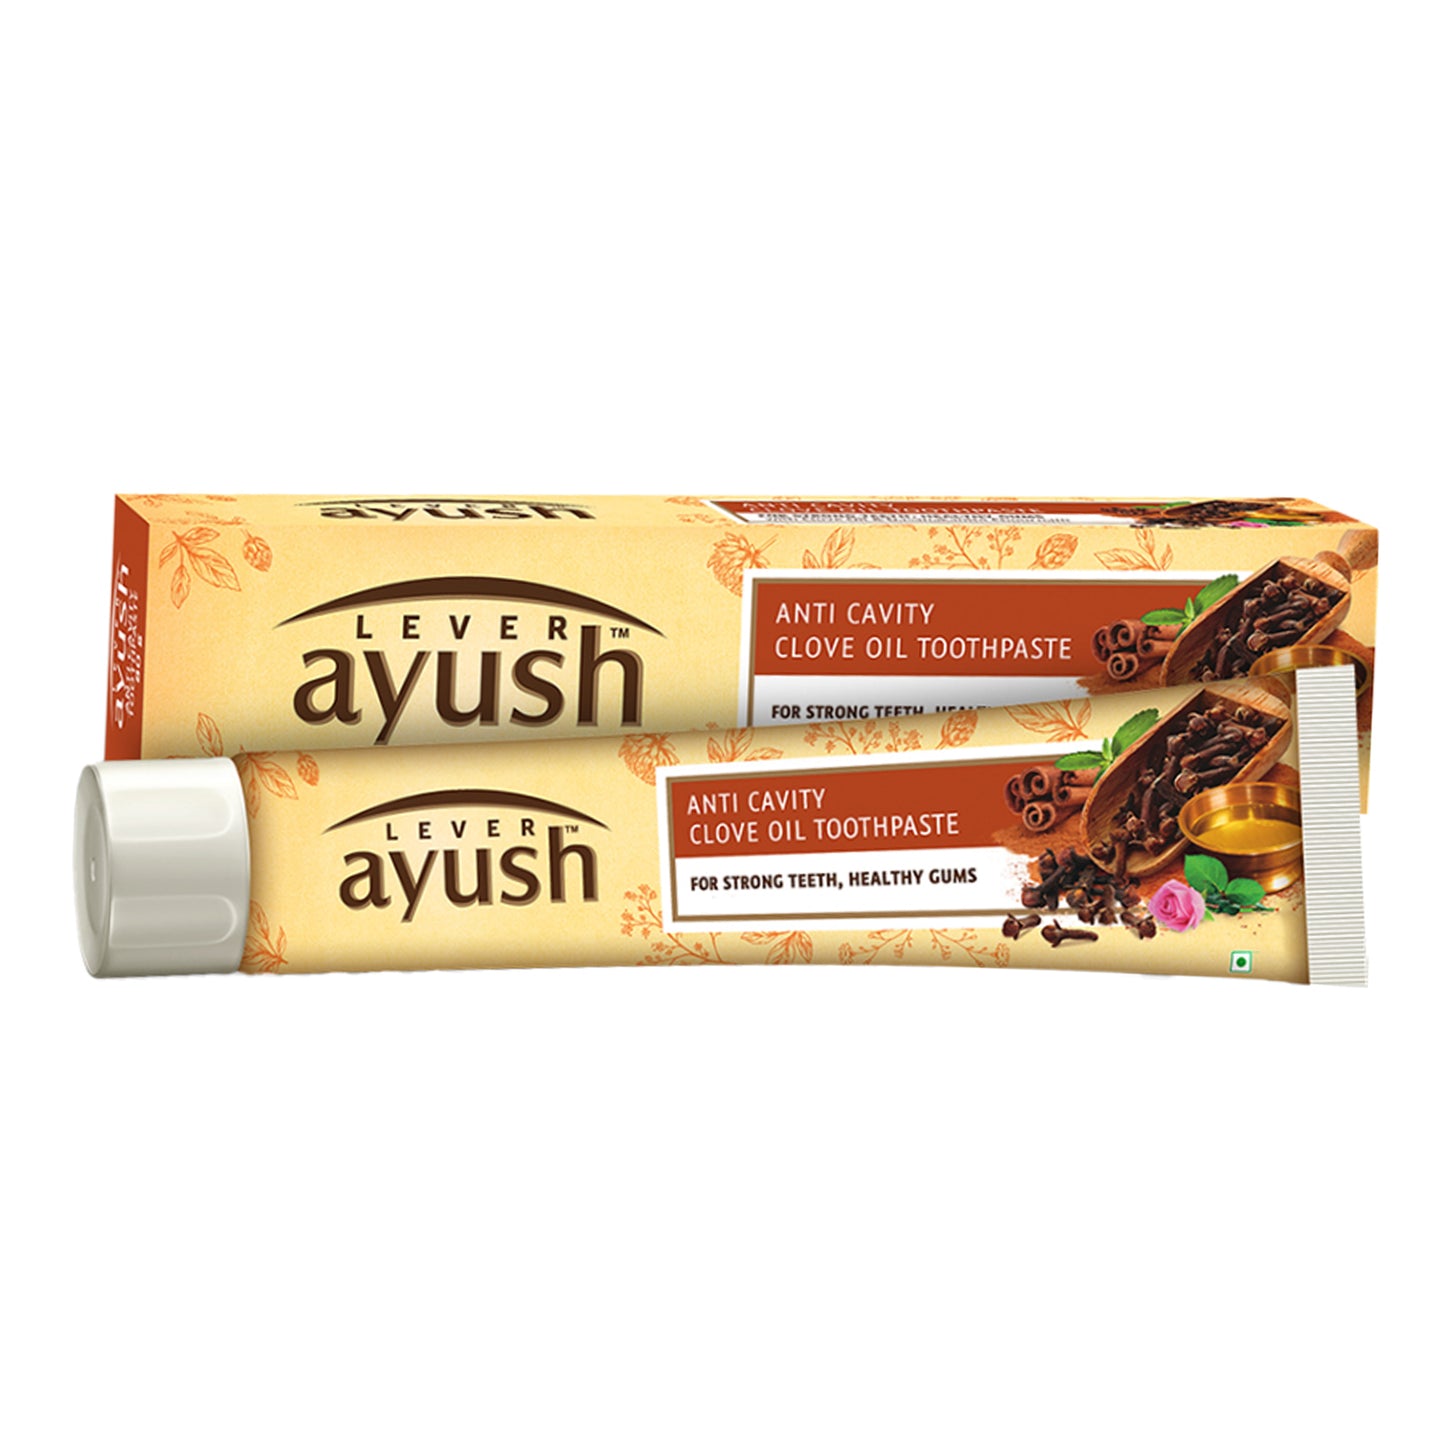 Pasta de dientes con aceite de clavo anti caries Ayush